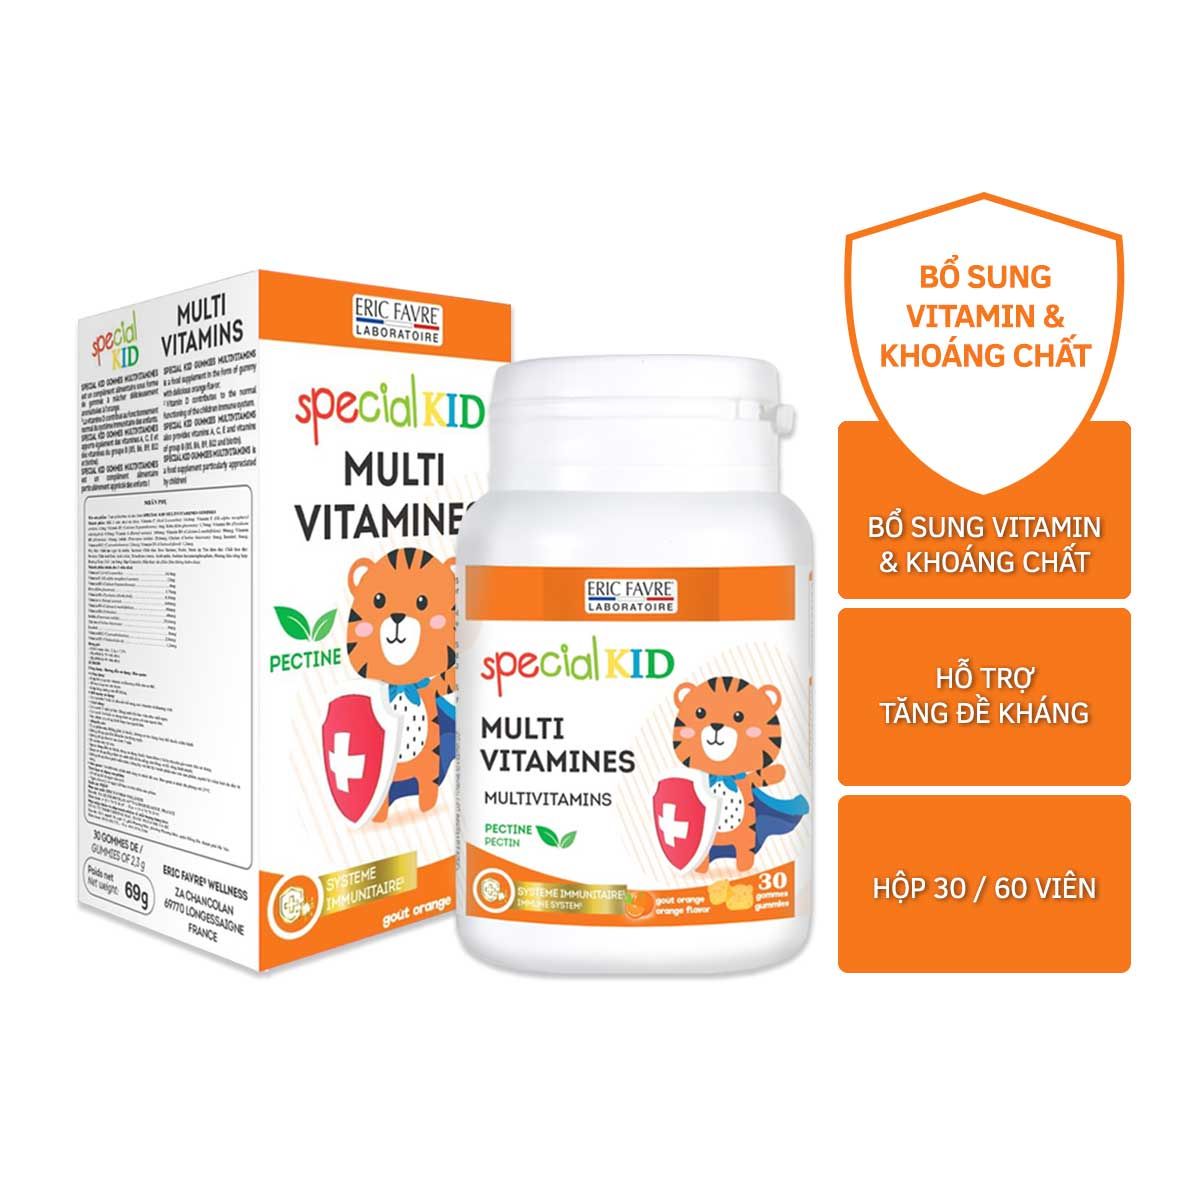  Special Kid Multivitamines Gommes - Giúp bổ sung các vitamin và khoáng chất cho cơ thể, hỗ trợ nâng cao sức khoẻ, giúp tăng cường đề kháng [Nhập khẩu Pháp] 